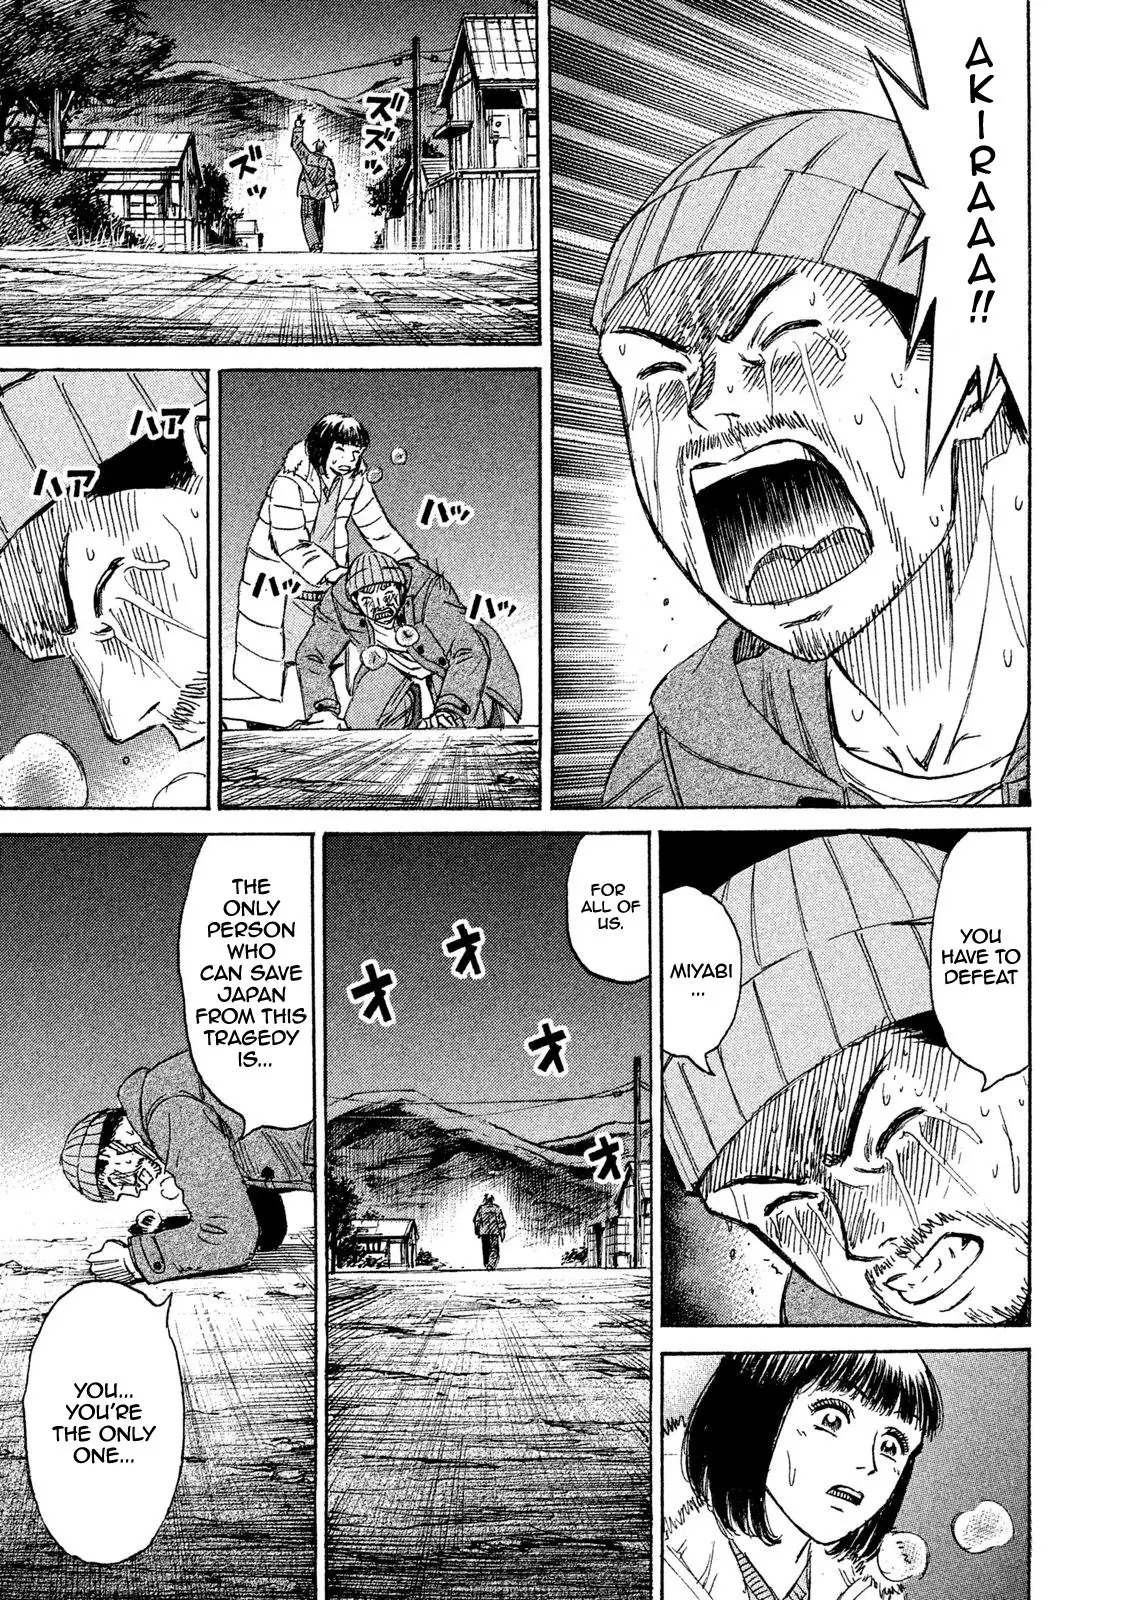 Higanjima - 48 Days Later - 19 page 19-457076b9